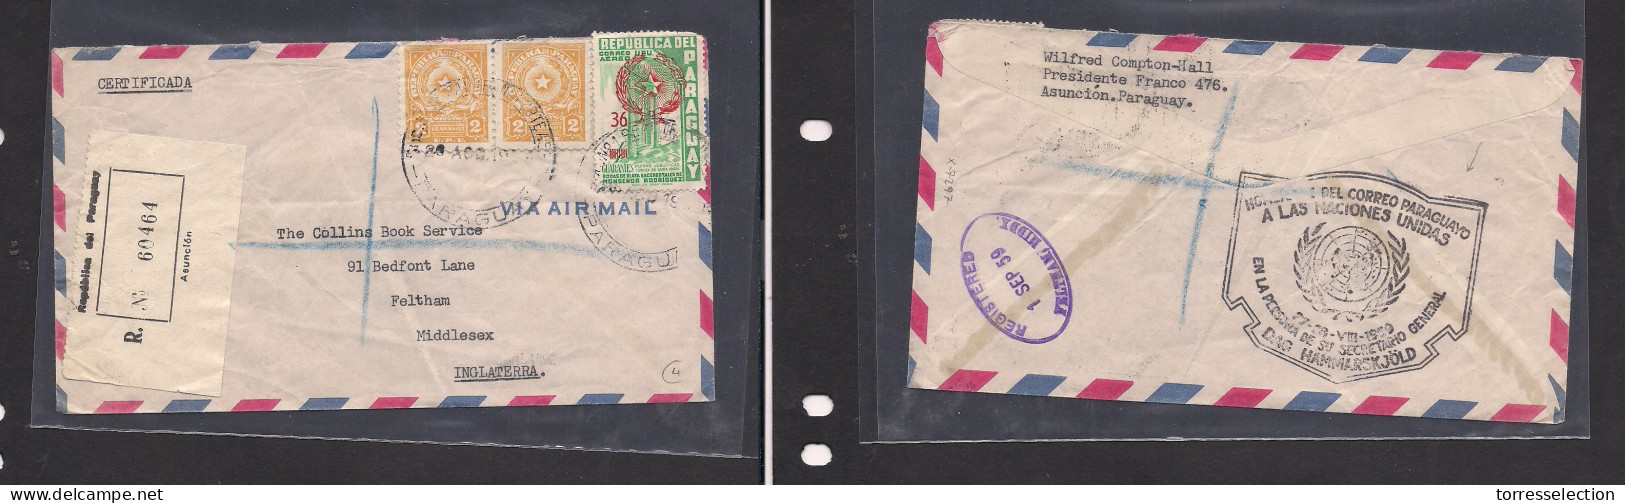 PARAGUAY. Paraguay Cover 1959 Asuncion To UK Feltham Registr Mult Fkd Env Reverse UNO Cachet. Easy Deal. XSALE. - Paraguay